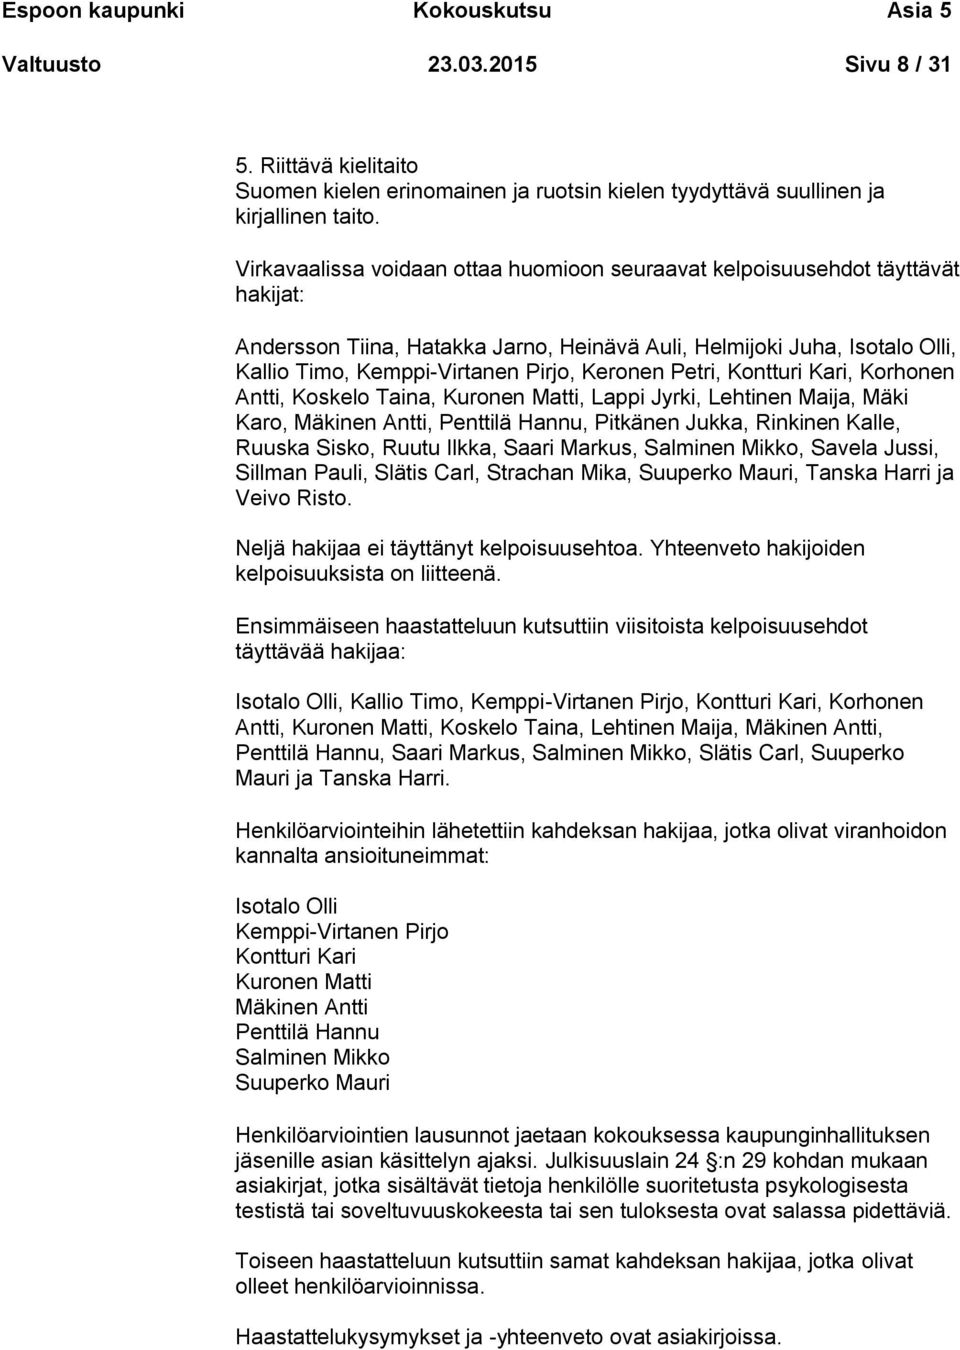 Keronen Petri, Kontturi Kari, Korhonen Antti, Koskelo Taina, Kuronen Matti, Lappi Jyrki, Lehtinen Maija, Mäki Karo, Mäkinen Antti, Penttilä Hannu, Pitkänen Jukka, Rinkinen Kalle, Ruuska Sisko, Ruutu